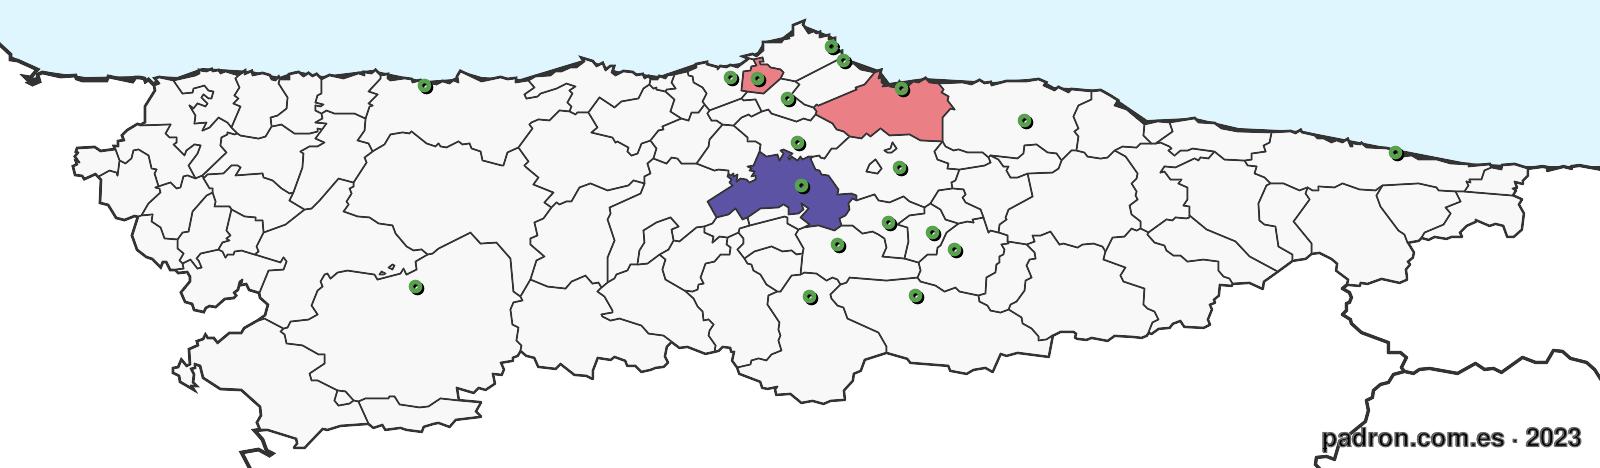 mozambiqueños en asturias.